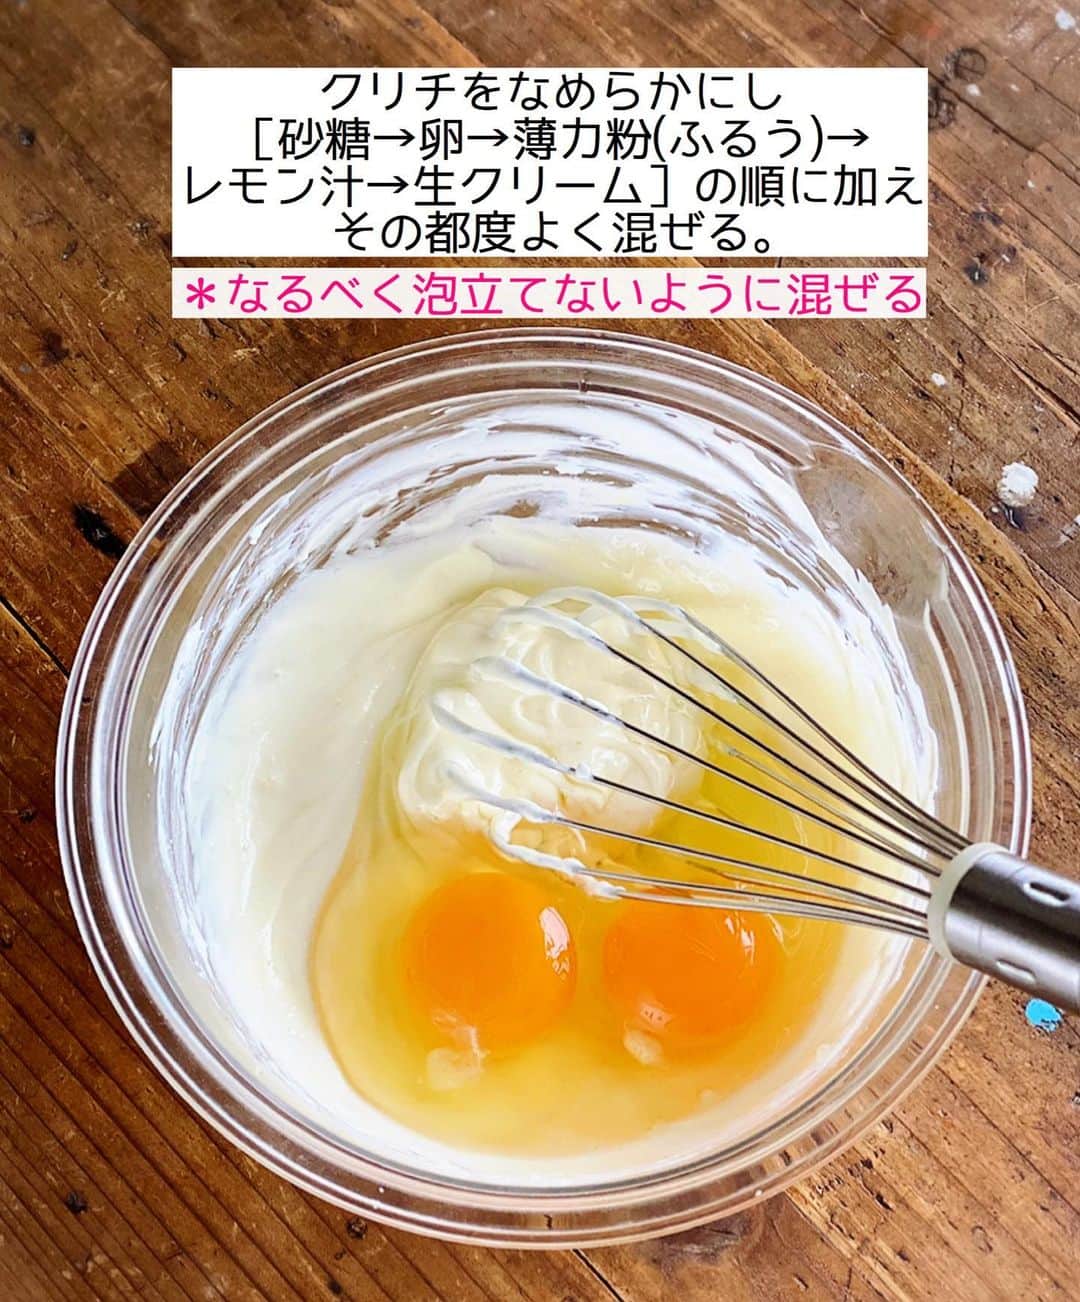 Mizuki【料理ブロガー・簡単レシピ】さんのインスタグラム写真 - (Mizuki【料理ブロガー・簡単レシピ】Instagram)「・﻿ 【#レシピ 】ーーーーーーーー﻿ ♡ミニバスクチーズケーキ♡﻿ ーーーーーーーーーーーーーー﻿ ﻿ ﻿ ﻿ おはようございます(*^^*)﻿ ﻿ 今日ご紹介させていただくのは﻿ \\ミニバスクチーズケーキ//﻿ ﻿ 切り分ける必要がなく﻿ 気軽につまめる嬉しいサイズ♩﻿ マフィン型やマフィンカップ﻿ ココットでも作れますよ〜♡﻿ ﻿ 作り方は超簡単(*´艸`)﻿ 混ぜて焼くだけ！！﻿ クリチは1箱使い切り！﻿ 普通のチーズケーキと﻿ 同じ材料で作れます♡♡﻿ ﻿ ﻿ ﻿ ＿＿＿＿＿＿＿＿＿＿＿＿＿＿＿＿＿＿＿＿﻿ 【マフィン型8個分】﻿ クリームチーズ...200g﻿ 砂糖...60g﻿ 卵...2個﻿ 薄力粉...大1﻿ レモン汁...小1﻿ 生クリーム...150ml﻿ ﻿ (準備)クリームチーズは常温に戻す。型にグラシンカップを敷く。オーブンを220度に予熱する。﻿ 1.ボウルにクリームチーズを入れてなめらかにし、砂糖→卵→薄力粉(ふるう)→レモン汁→生クリームの順に加え、その都度よく混ぜる(なるべく泡立てないように)。﻿ 2.型に注ぎ、予熱したオーブンで20〜25分焼く。焼けたらアミにのせて冷まし、冷蔵庫で一晩寝かせる。﻿ ￣￣￣￣￣￣￣￣￣￣￣￣￣￣￣￣￣￣￣￣﻿ ﻿ ﻿ ﻿ 《ポイント》﻿ ♦︎短時間でしっかり焼き色をつけるためにオーブンの上段で焼きました♩写真くらい焼き色を付けると美味しいです♩﻿ ♦︎トースターで15分(目安)焼いてもOK♩﻿ ♦︎クリームチーズはレンジで30〜40秒加熱すると柔らかくなります♩﻿ ♦︎生地の材料を混ぜる時はなるべく泡立てないようにして下さい♩﻿ ♦︎しっかり一晩冷やして下さい♩﻿ ﻿ ﻿ ﻿ ﻿ ﻿ ﻿ ﻿ ﻿ 📕新刊発売中📕﻿ 【ラクしておいしい！#1品晩ごはん 】﻿ ￣￣￣￣￣￣￣￣￣￣￣￣￣￣￣￣￣﻿ 私たちだってヘトヘトな日がある•••﻿ 毎日何品も作っていられない•••﻿ もうごはんに悩みたくない😢﻿ そんな時、1品ごはんはいかがでしょう？﻿ というご提案です✨﻿ ﻿ 【1品ごはん】は﻿ 副菜いらずで全てがシンプル！﻿ ￣￣￣￣￣￣￣￣￣￣￣￣￣￣￣￣￣￣﻿ 一品つくるだけでいいから﻿ 献立を考えなくてよし！﻿ ￣￣￣￣￣￣￣￣￣￣￣￣￣￣￣￣￣￣﻿ 悩まない、疲れない、﻿ 気力や時間がなくてもなんとかなる！﻿ ￣￣￣￣￣￣￣￣￣￣￣￣￣￣￣￣￣￣﻿ そんな頼りになる﻿ 便利なお助けごはんです☺️💕﻿ (ハイライトに🔗貼っています✨)﻿ ￣￣￣￣￣￣￣￣￣￣￣￣￣￣￣￣￣﻿ ﻿ ﻿ ﻿ ﻿ ﻿ ⭐️発売中⭐️﻿ ＿＿＿＿＿＿＿＿＿＿＿＿＿＿＿＿＿＿﻿ しんどくない献立、考えました♩﻿ \15分でいただきます/﻿ 📕#Mizukiの2品献立 📕﻿ ﻿ 和食をもっとカジュアルに♩﻿ \毎日のごはんがラクになる/﻿ 📘#Mizukiの今どき和食 📘﻿ ﻿ ホケミレシピの決定版♩﻿ \はじめてでも失敗しない/﻿ 📙ホットケーキミックスのお菓子 📙﻿ ﻿ NHKまる得マガジンテキスト☆﻿ ホットケーキミックスで﻿ 📗絶品おやつ&意外なランチ📗﻿ ￣￣￣￣￣￣￣￣￣￣￣￣￣￣￣￣￣￣﻿ ﻿ ﻿ ﻿ ＿＿＿＿＿＿＿＿＿＿＿＿＿＿＿＿＿＿﻿ レシピを作って下さった際や﻿ レシピ本についてのご投稿には﻿ タグ付け( @mizuki_31cafe )して﻿ お知らせいただけると嬉しいです😊💕﻿ ￣￣￣￣￣￣￣￣￣￣￣￣￣￣￣￣￣￣﻿ ﻿ ﻿ ﻿ ﻿ #バスクチーズケーキ#バスチー#チーズケーキ#Mizuki#簡単レシピ#時短レシピ#節約レシピ#料理#フーディーテーブル#マカロニメイト#おうちごはん#デリスタグラマー#料理好きな人と繋がりたい#料理記録#おうちごはんlover#写真好きな人と繋がりたい#foodpic#cooking#recipe#lin_stagrammer#foodporn#yummy#f52grams#ミニバスクチーズケーキm」12月29日 7時10分 - mizuki_31cafe